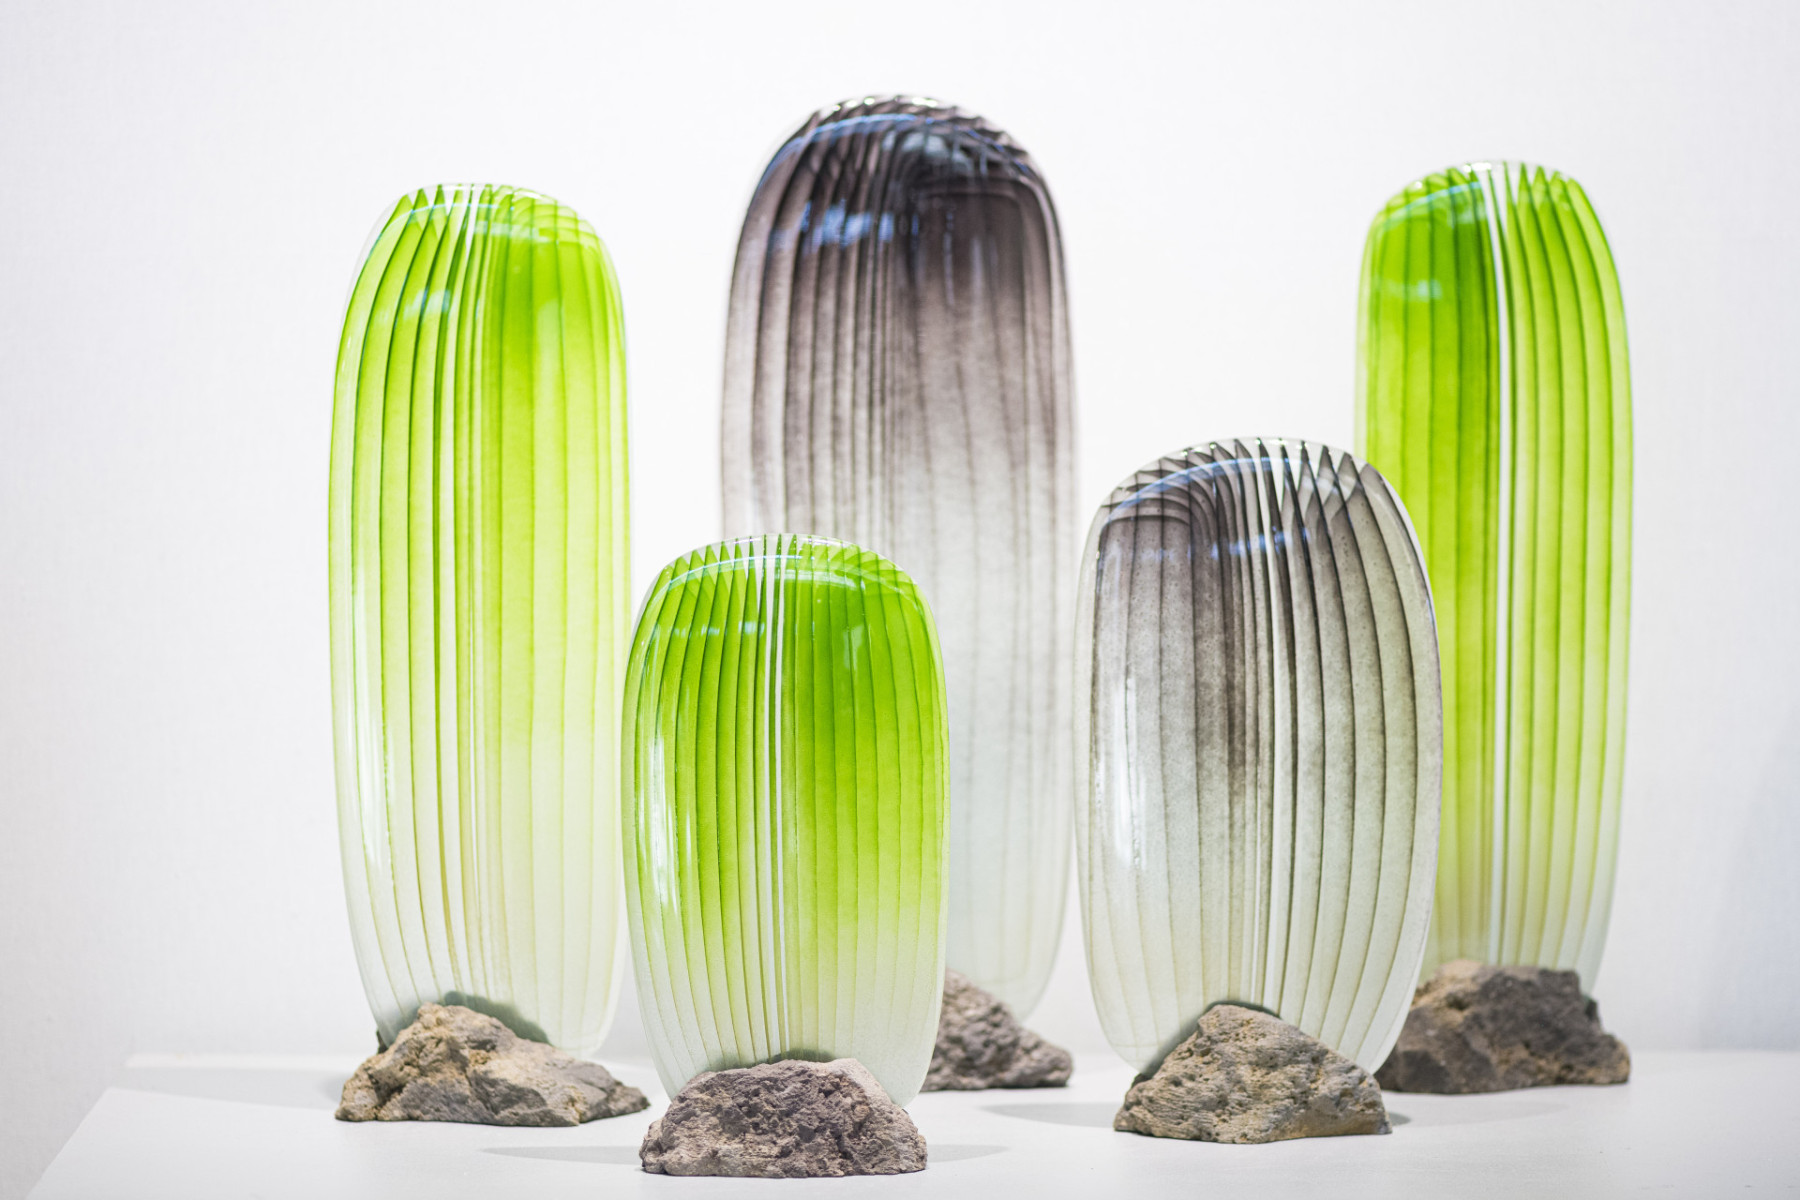 Sculptures de verre réalisées en dégradé de couleurs vertes serti sur une roche volcanique, à l'aspect brut et rugueux de Jonathan Ausseresse, présentées sur le salon Maison & Objet en 2022.